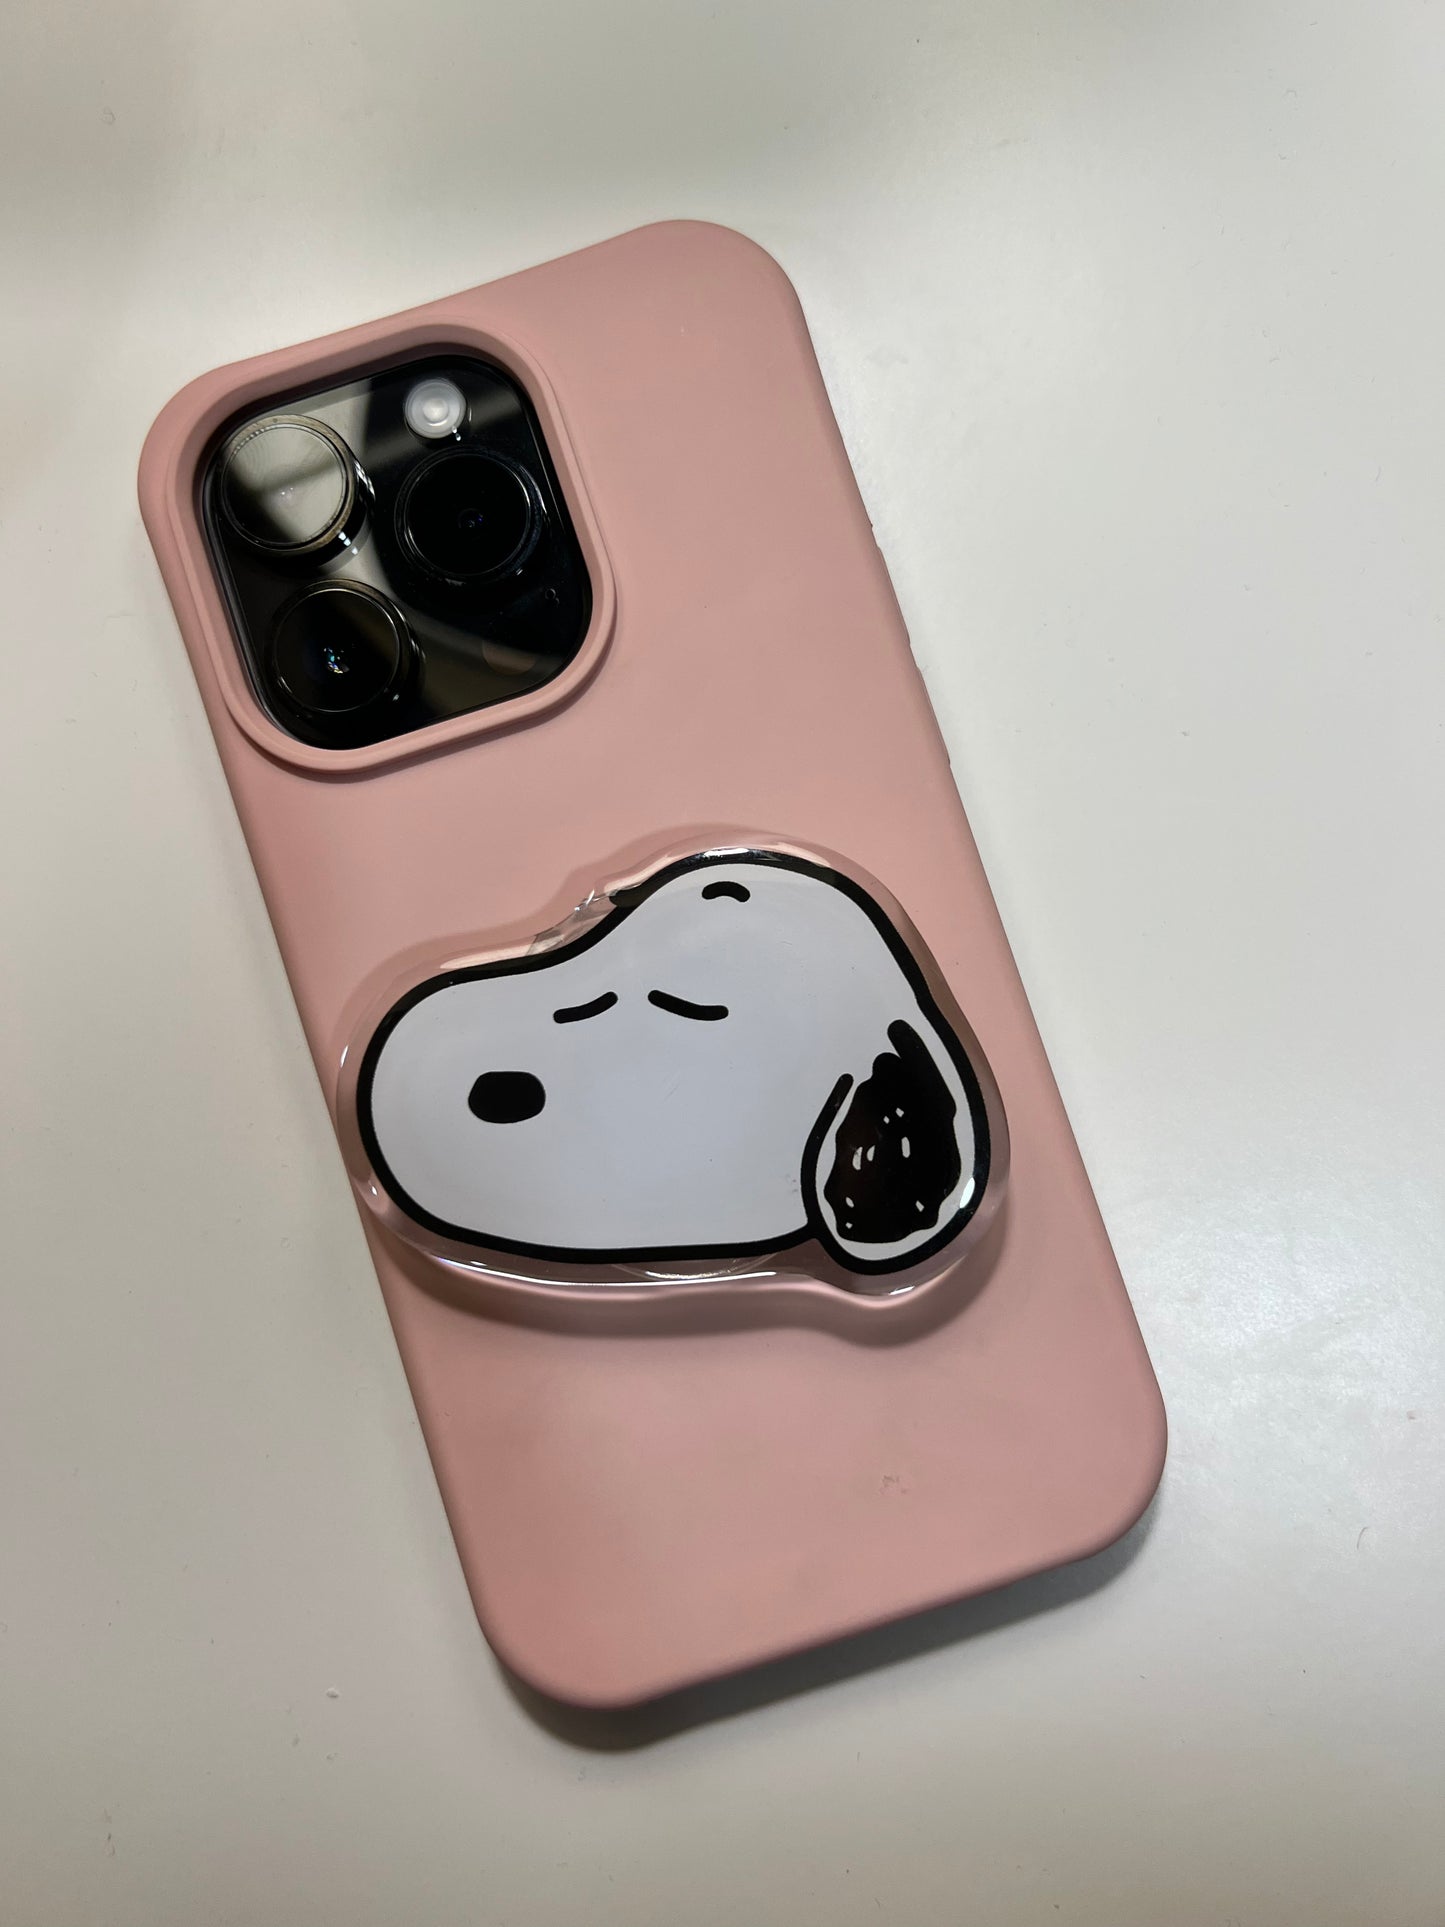 Snoopy / Charlie Brown phone grip tok/ Holder